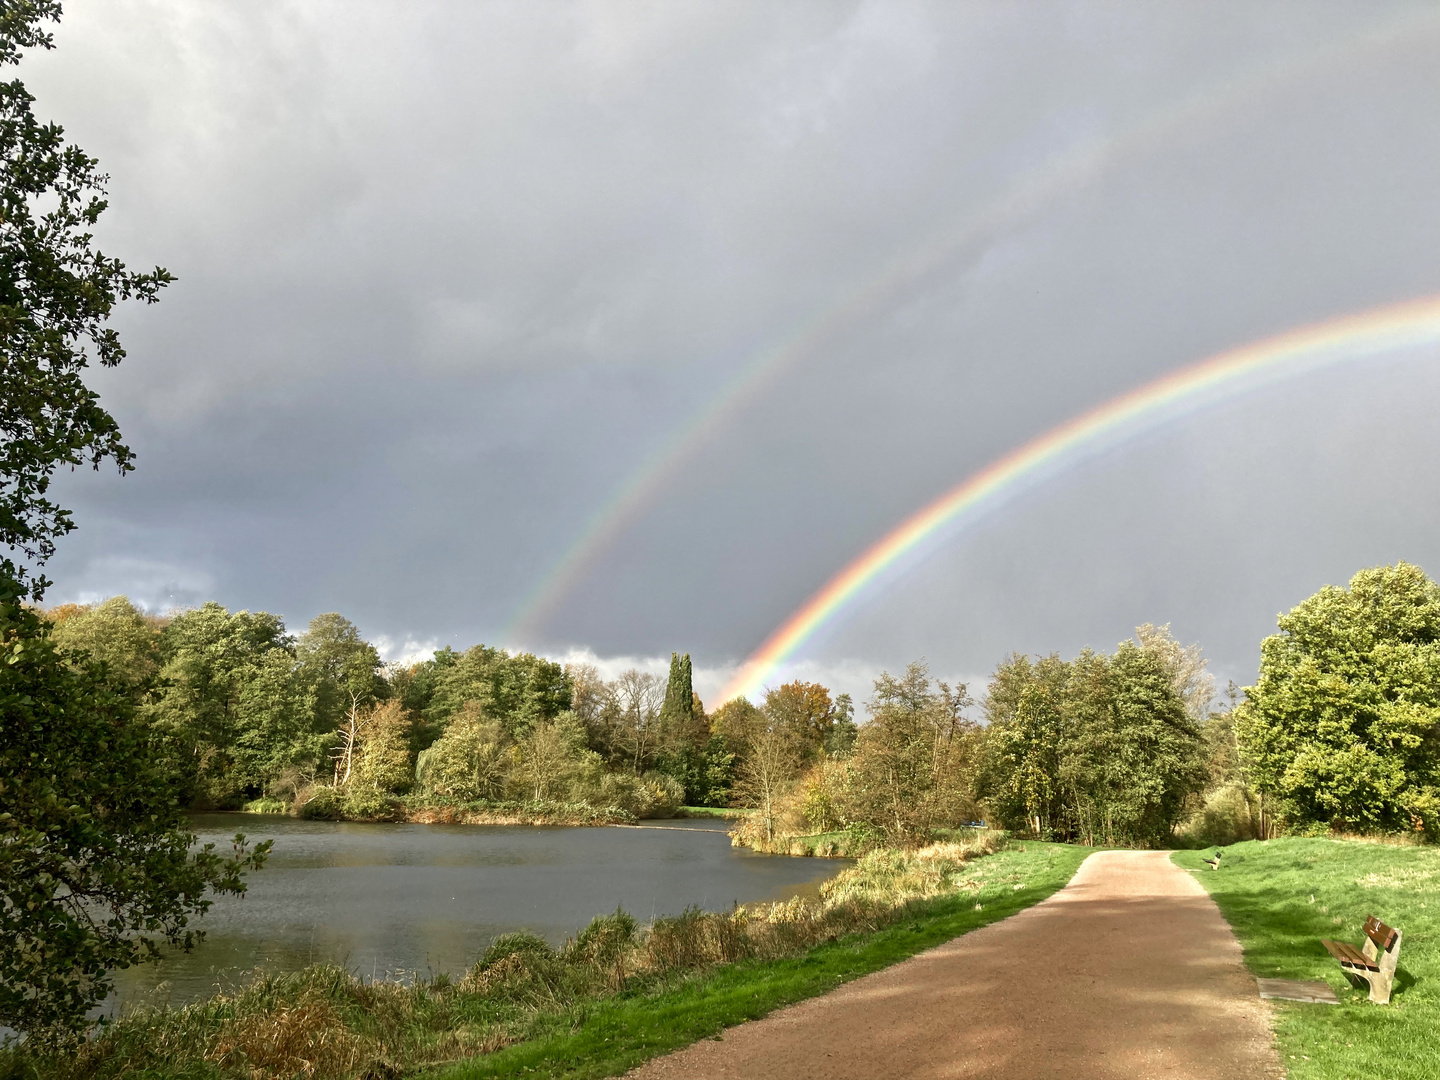 Sonne, Regen und das Resultat : zwei Regenbogen 